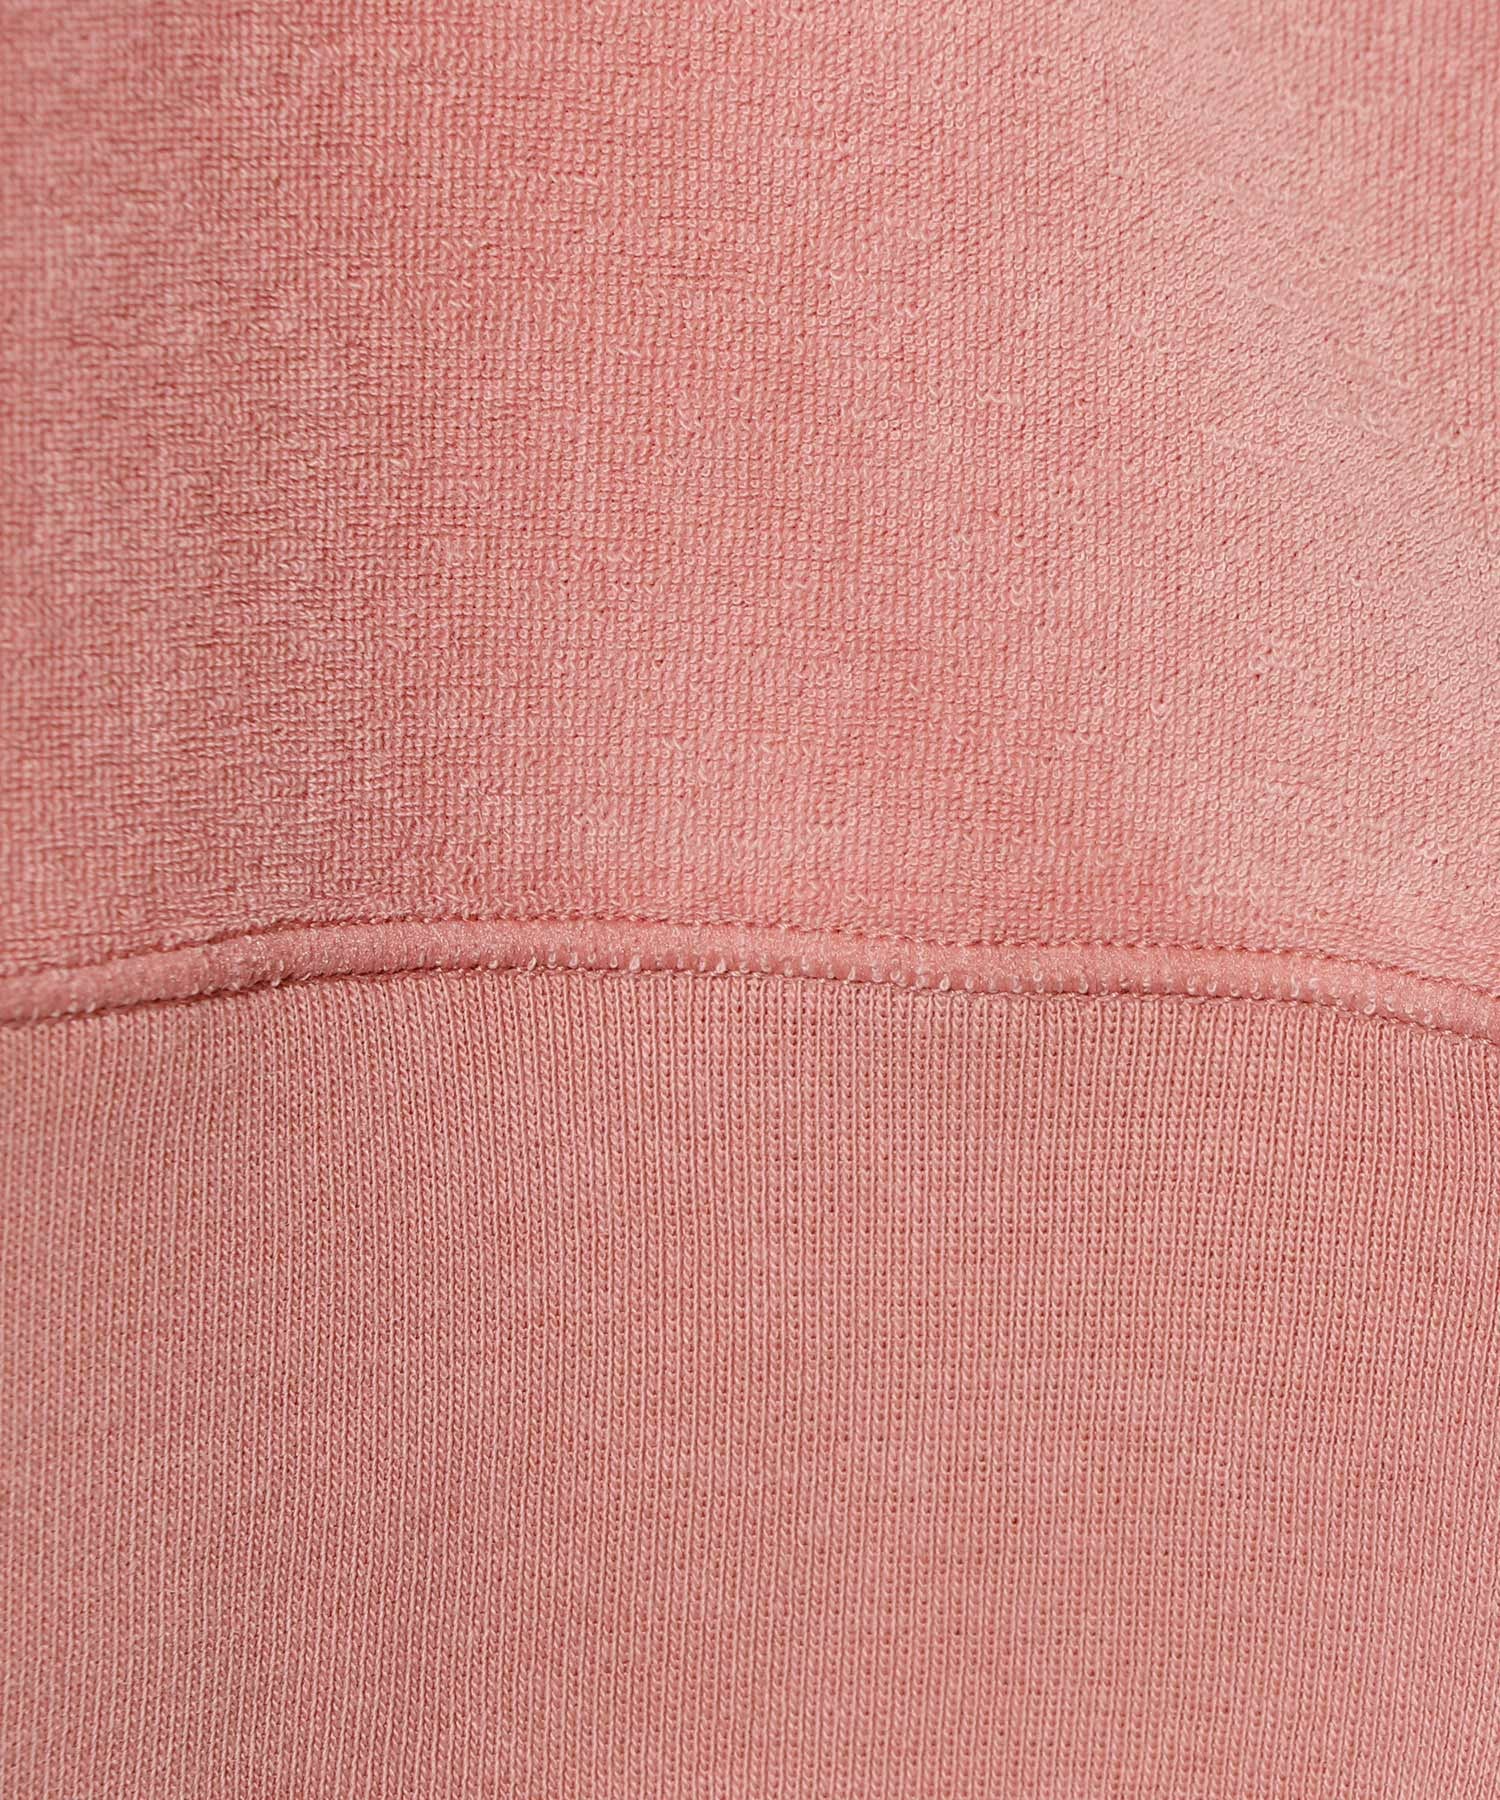 パイルスウェットTシャツ 詳細画像 ピンク 3